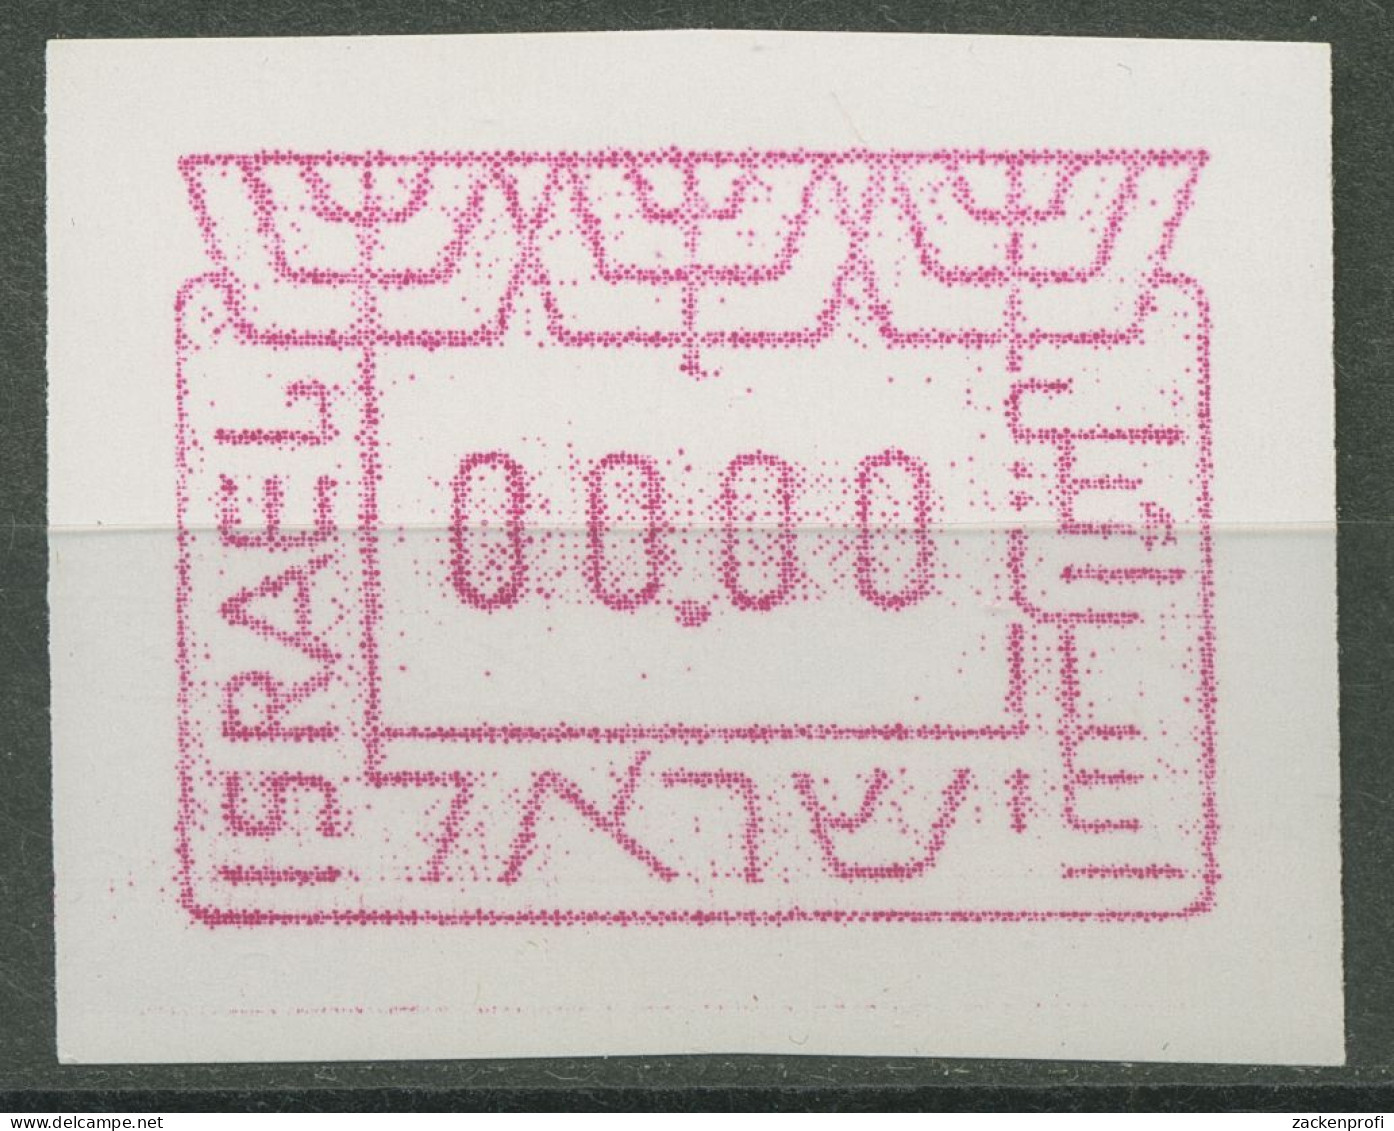 Israel ATM 1988 Automatenmarken 0000-Druck, ATM 1 D I Postfrisch - Automatenmarken (Frama)